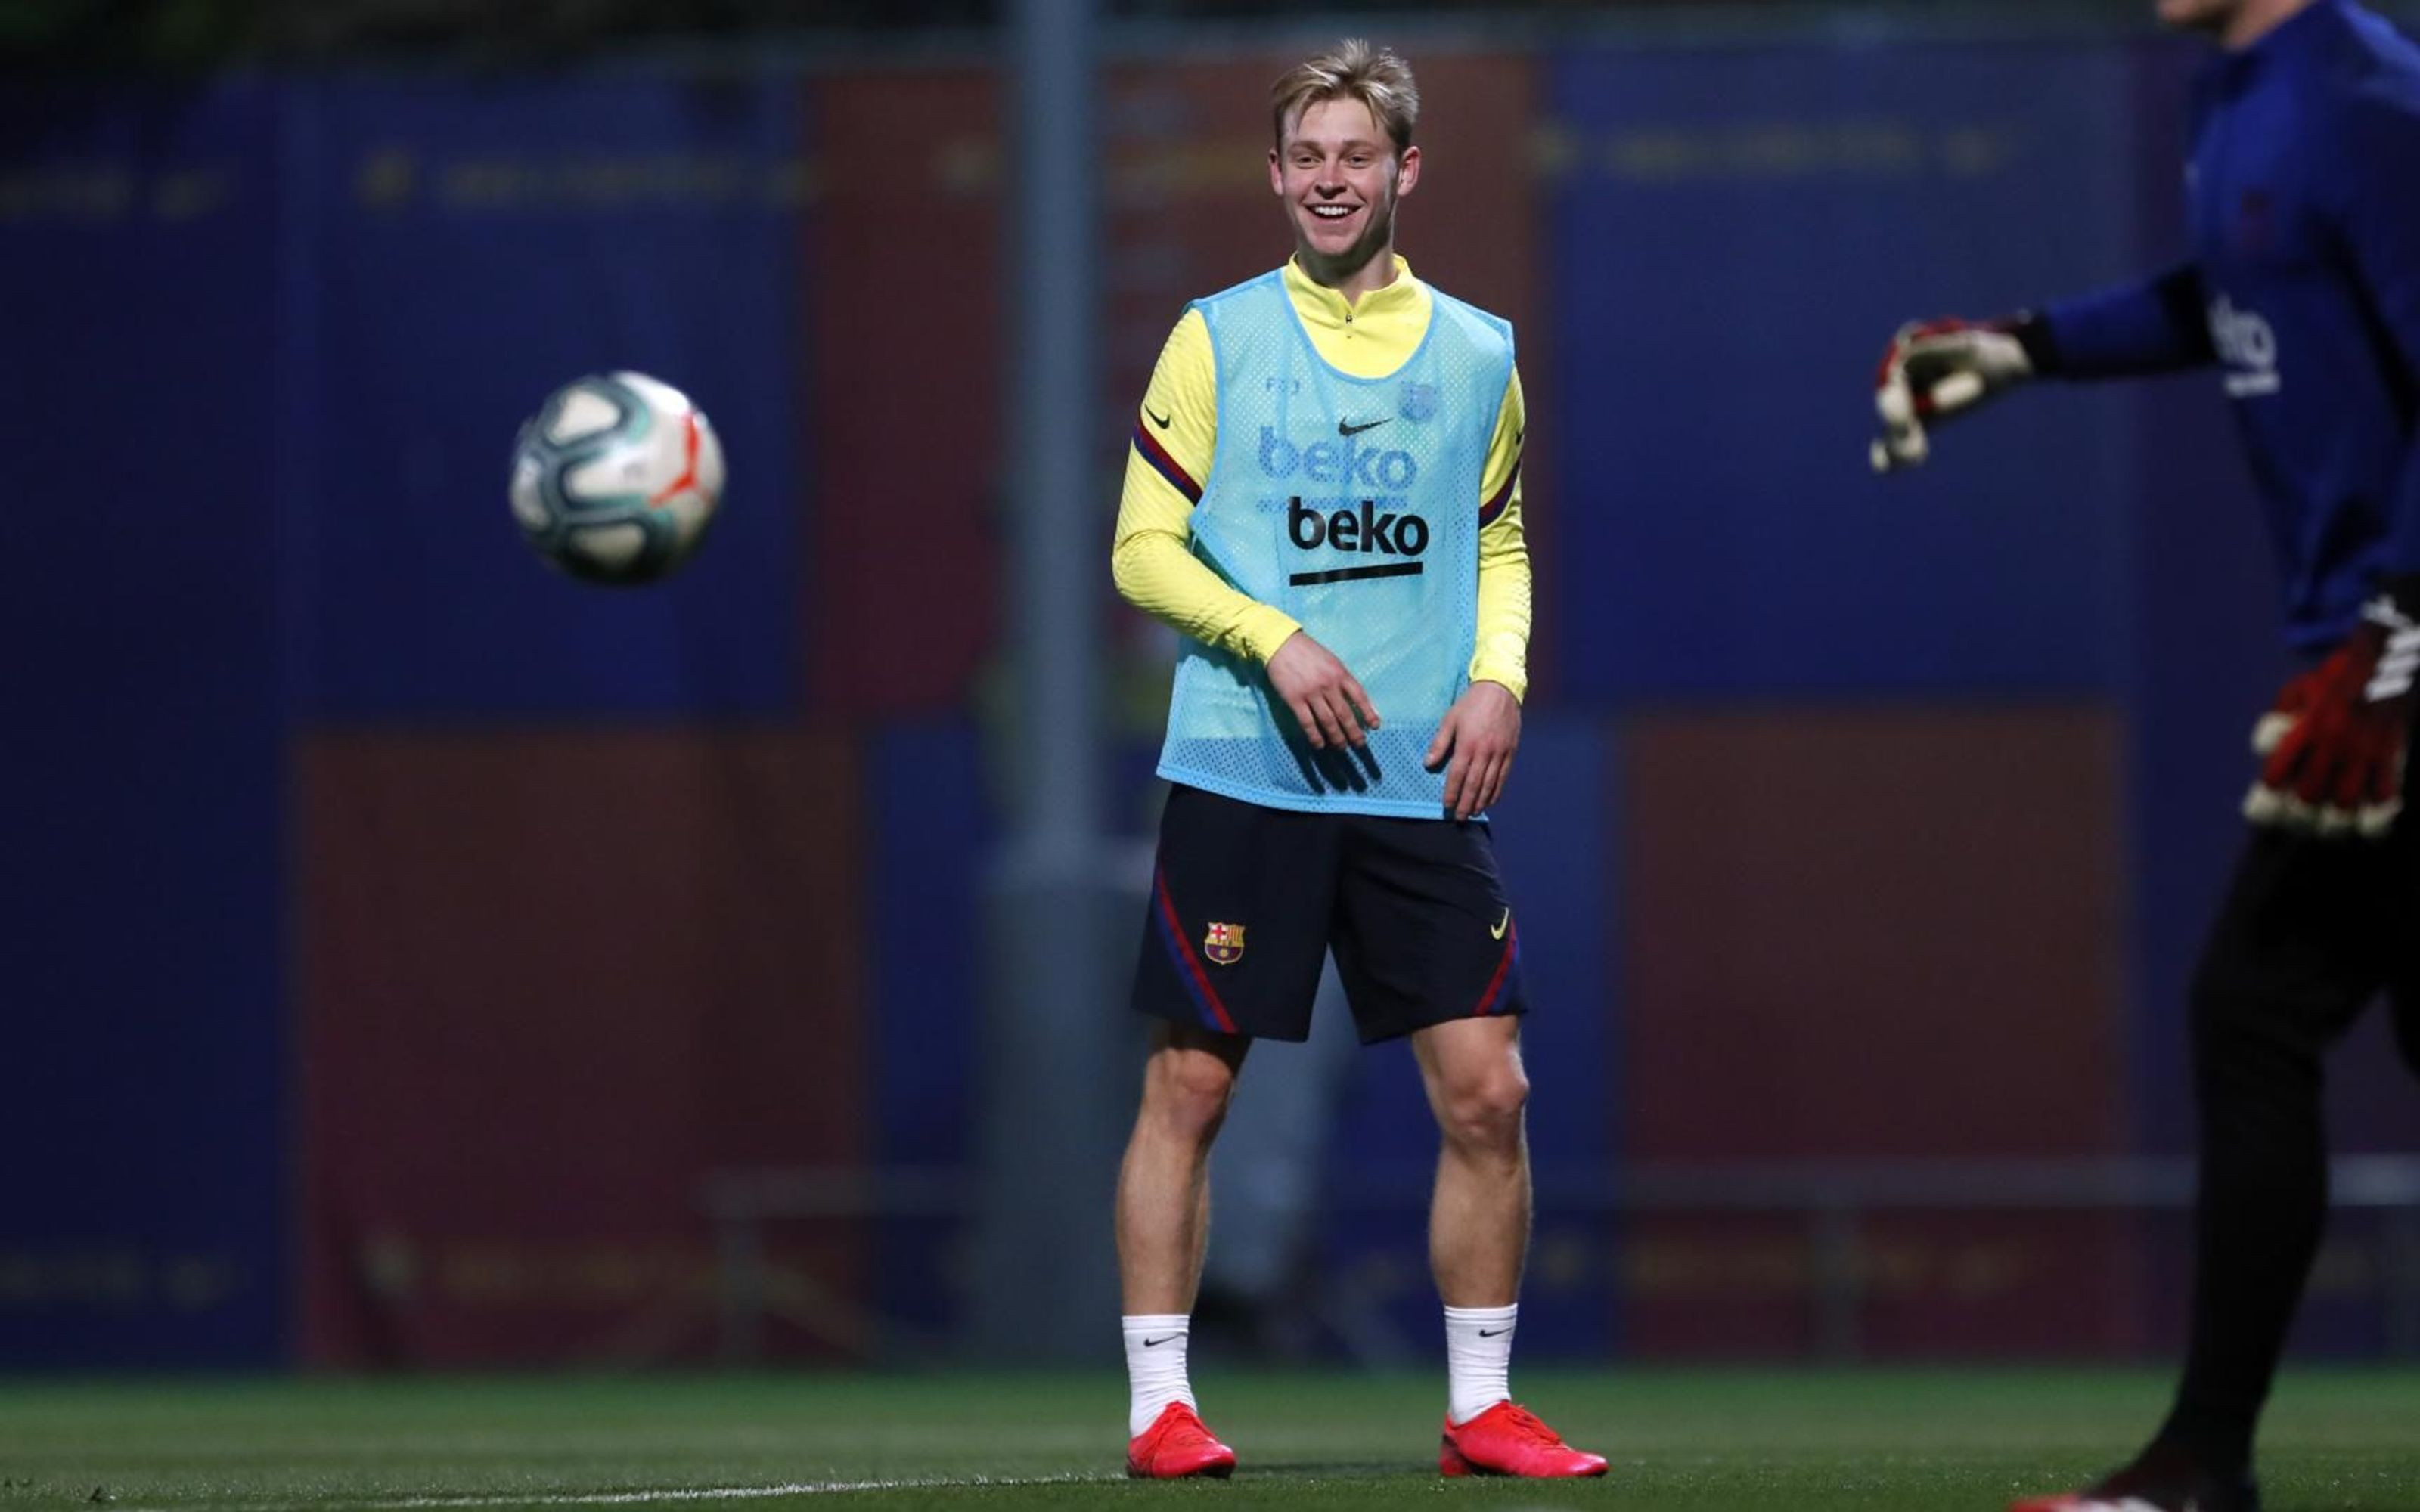 Frenkie de Jong entrenando con el Barça / FC Barcelona